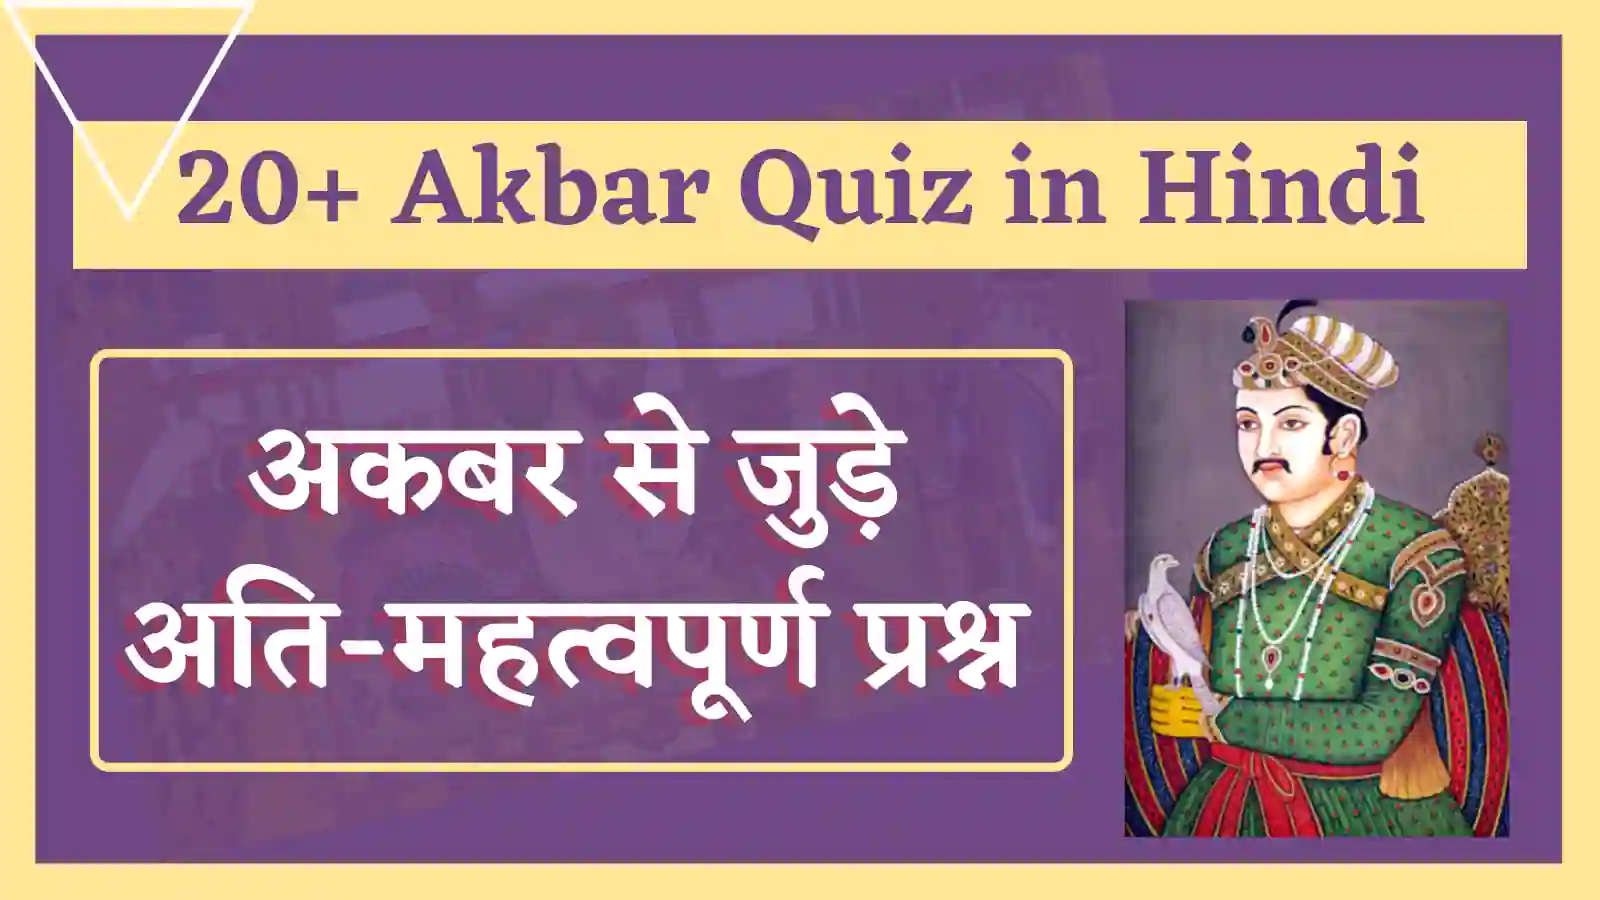 akbar quiz in hindi